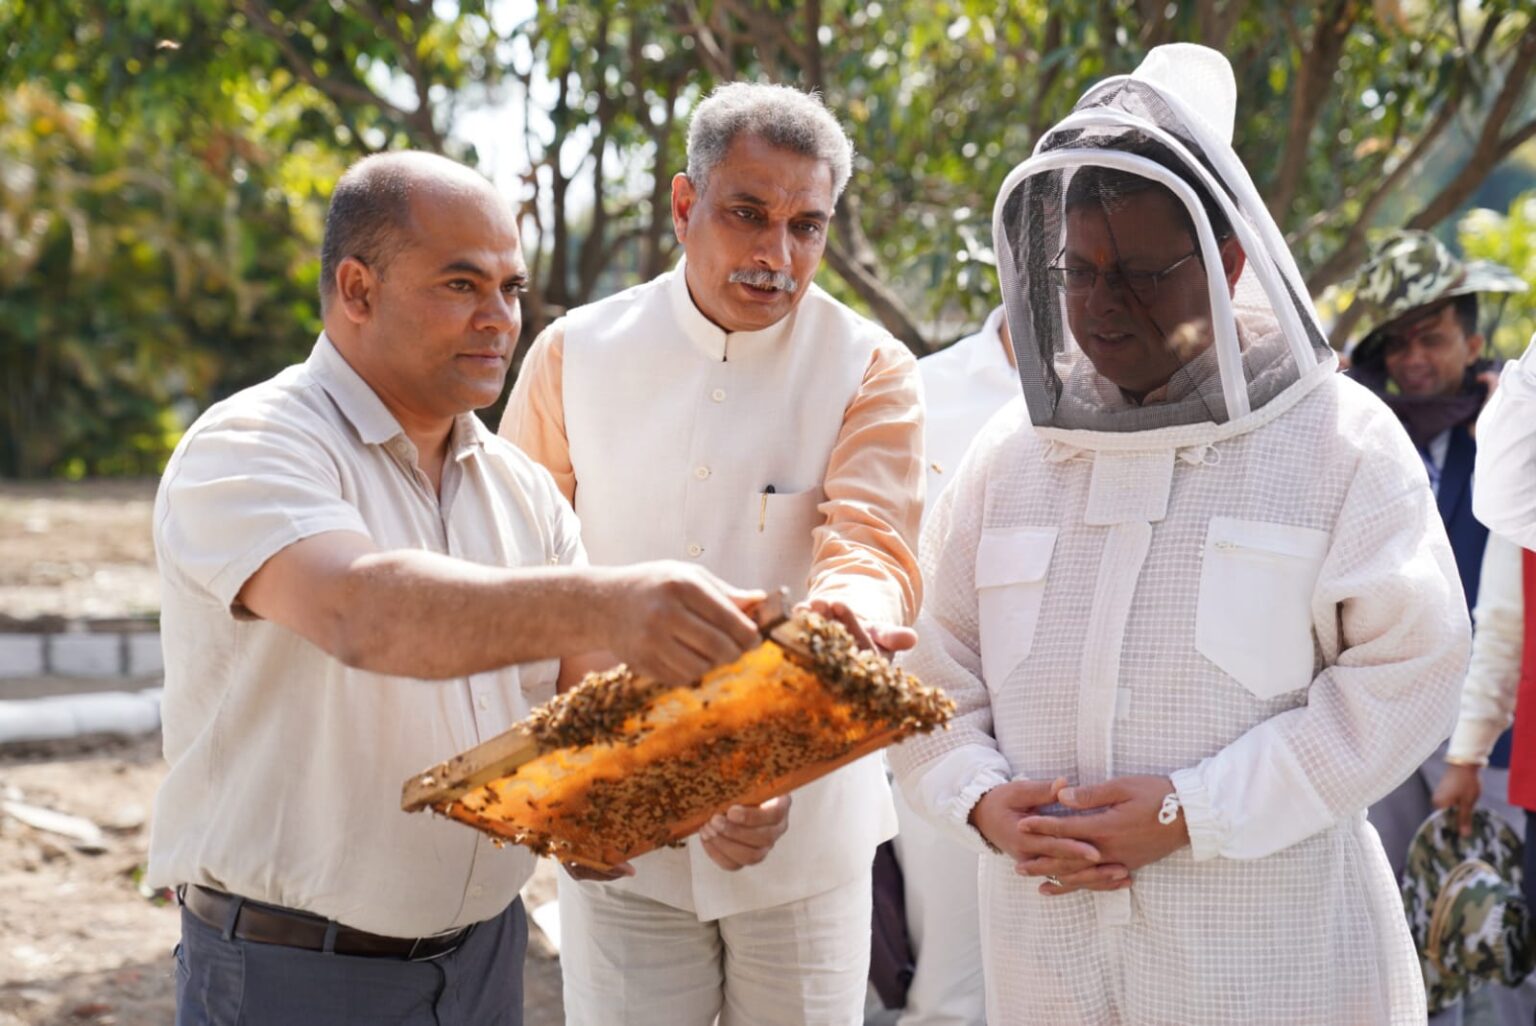 मुख्यमंत्री पुष्कर सिंह धामी ने शहद प्रसंस्करण का किया कार्य, 40 किग्रा शहद का हुआ उत्पादन